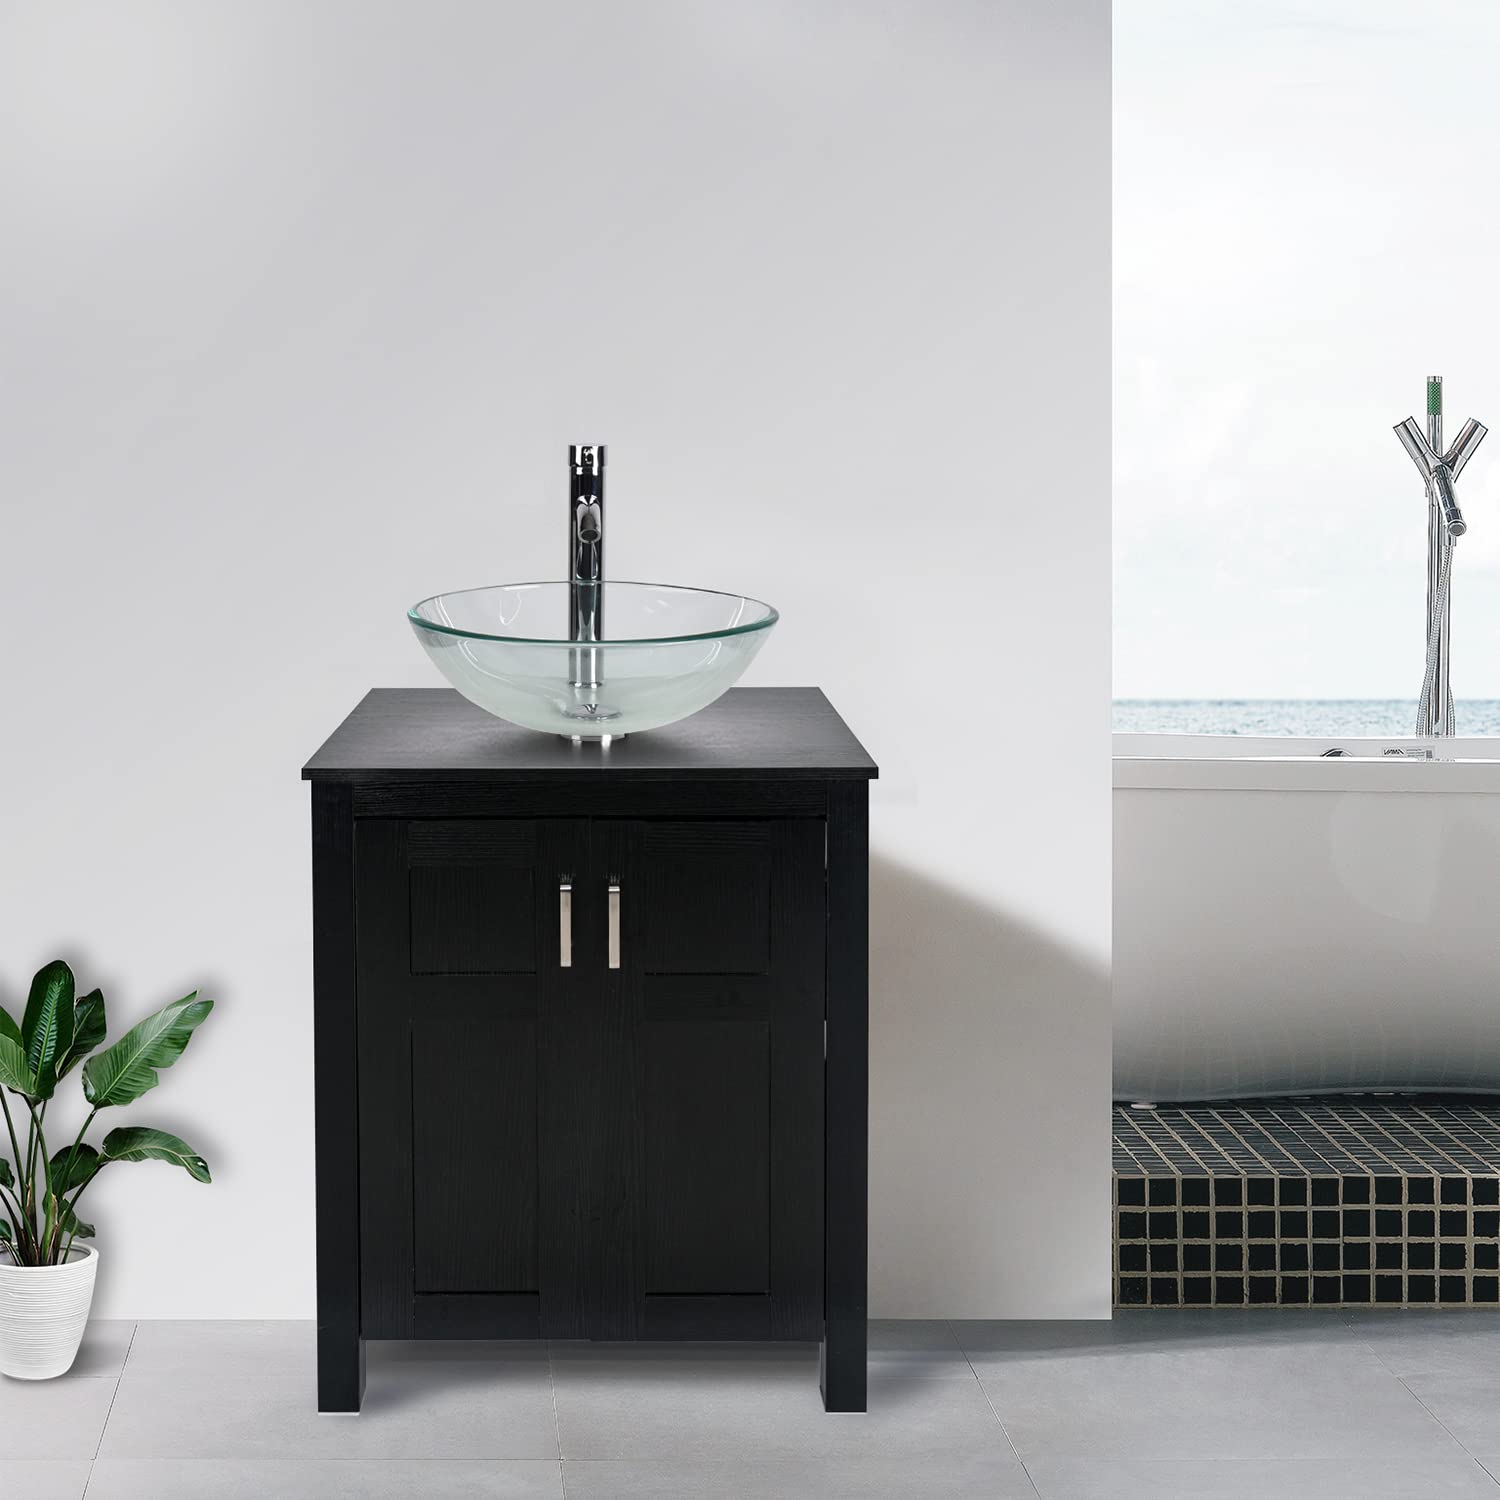 Black Bathroom Vanity Set with Clear Glass Vessel Sink HW1120 display scene